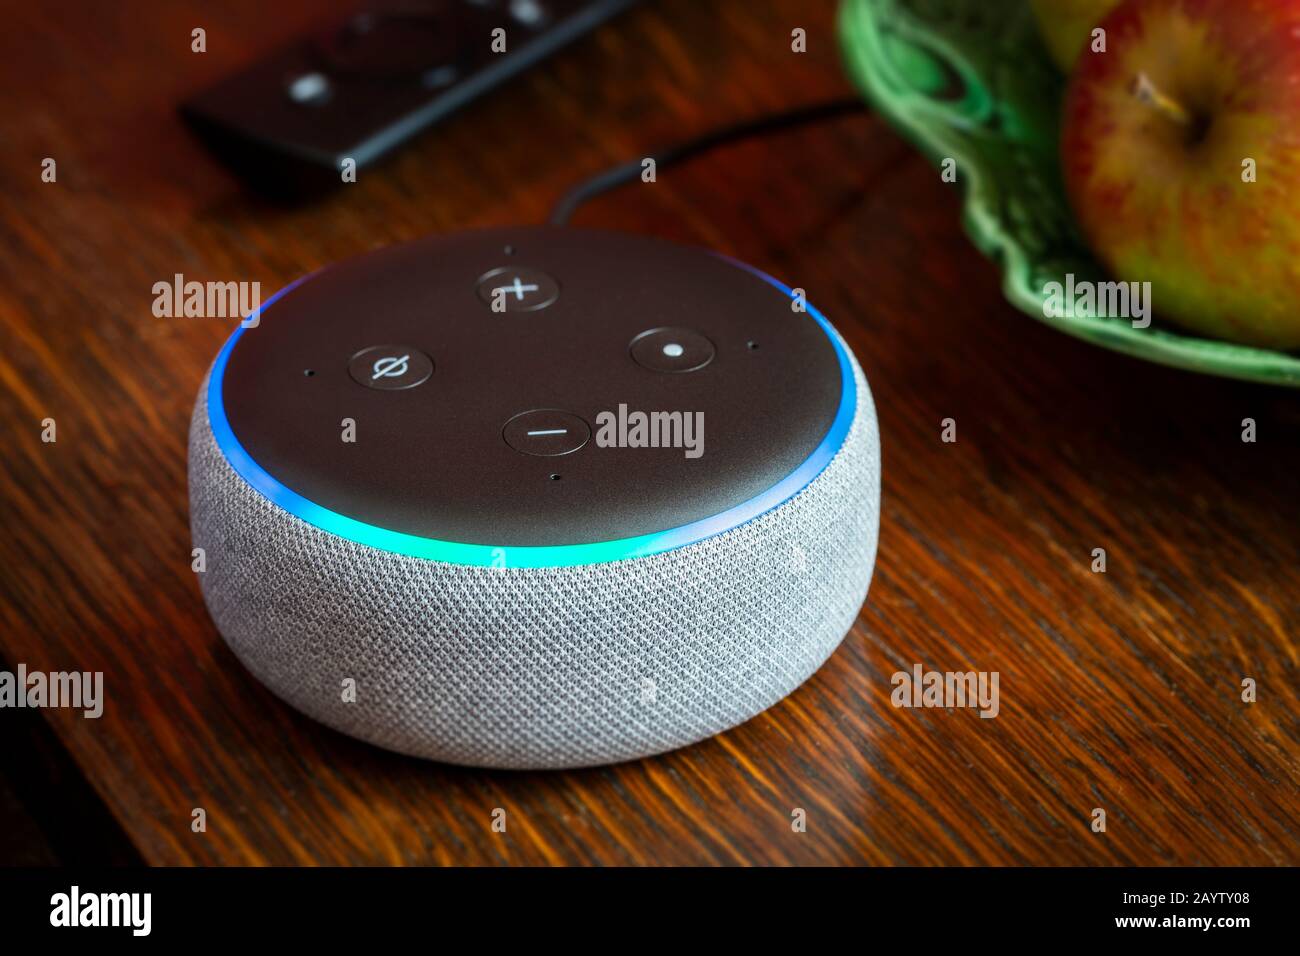 Bath, Großbritannien - 17. FEBRUAR 2020: Nahaufnahme eines Amazon Echo Dot der 3. Generation, das blau auf einem Tisch in einem heimischen Umfeld leuchtet Stockfoto